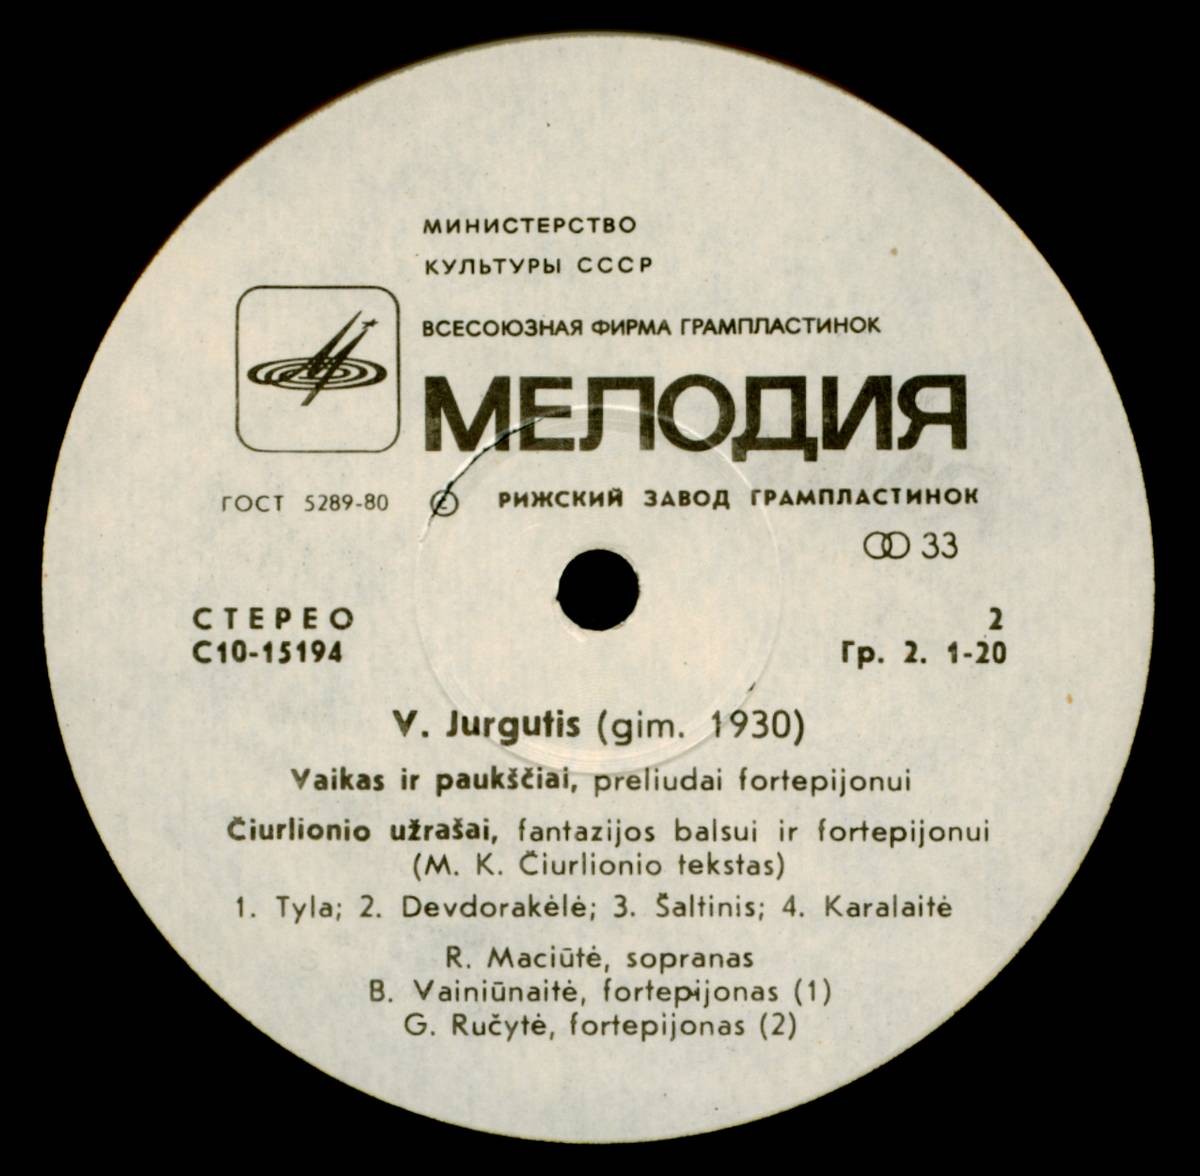 Витаутас ЮРГУТИС (1930): Юбилейный концерт